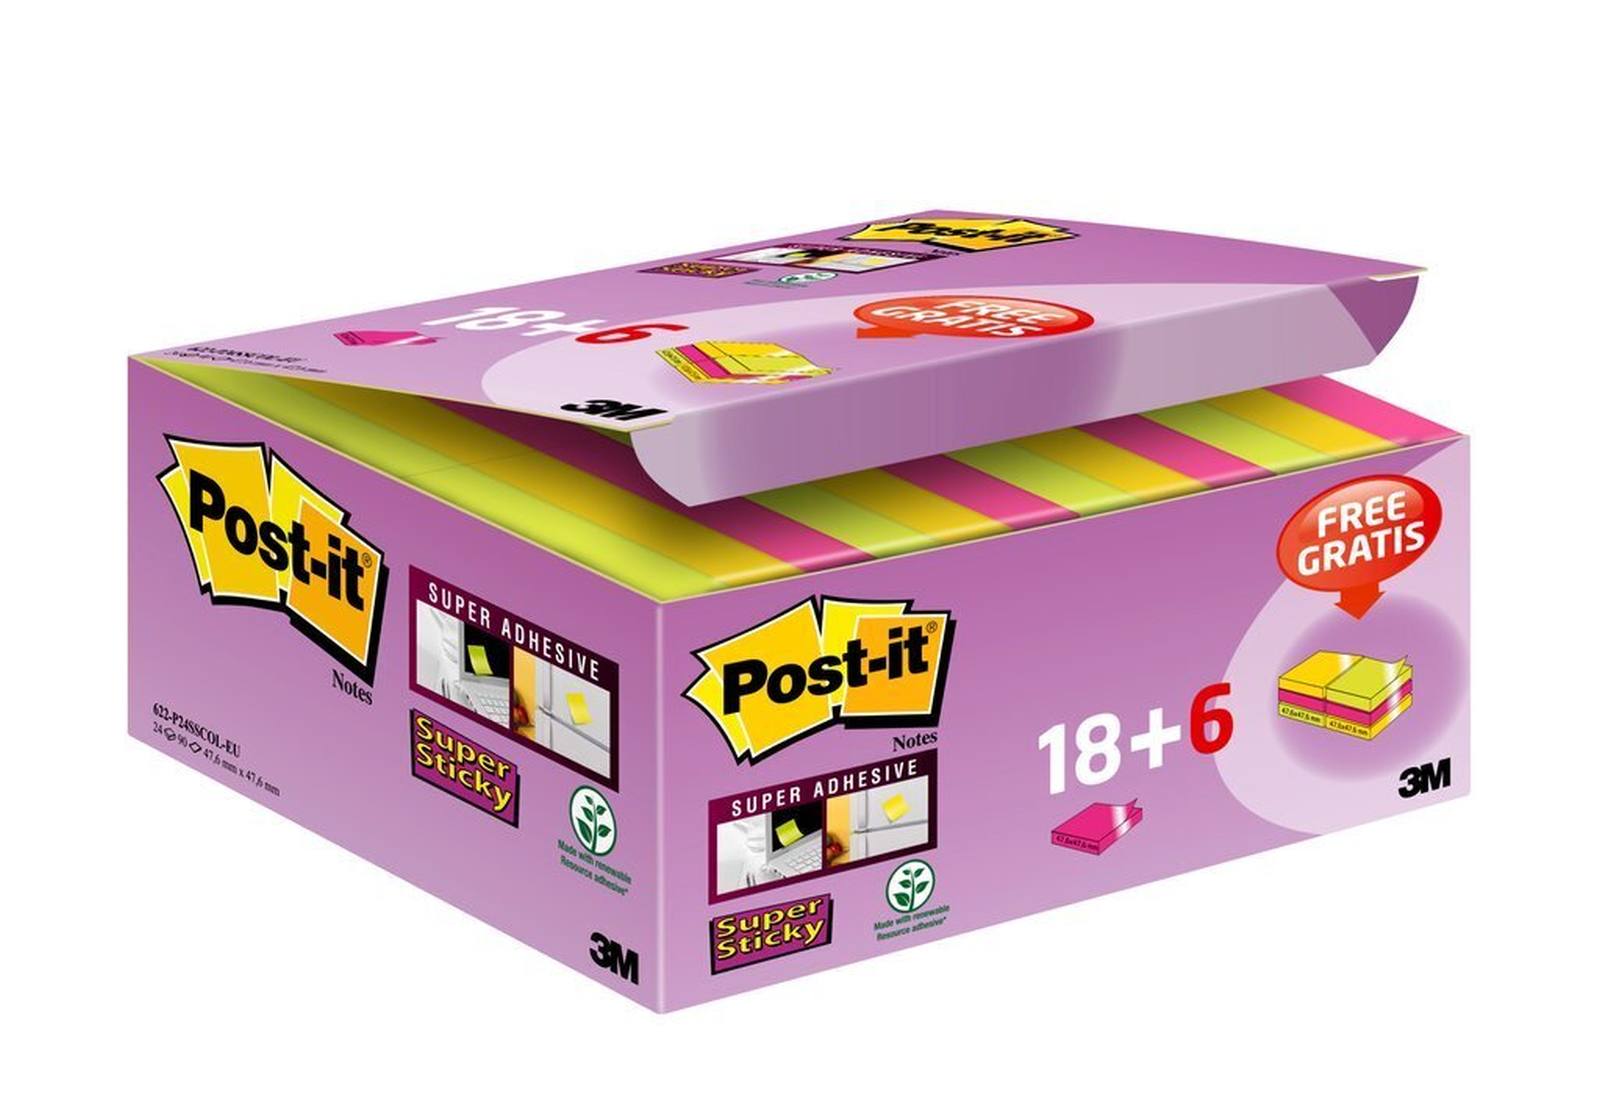 3M Post-it Super Sticky Notes Promotion 622P24SC, 24 blocchetti da 90 fogli in una confezione a prezzo speciale, ultra rosa, giallo, verde neon, 48 mm x 48 mm, non cellophanati singolarmente, certificati PEFC